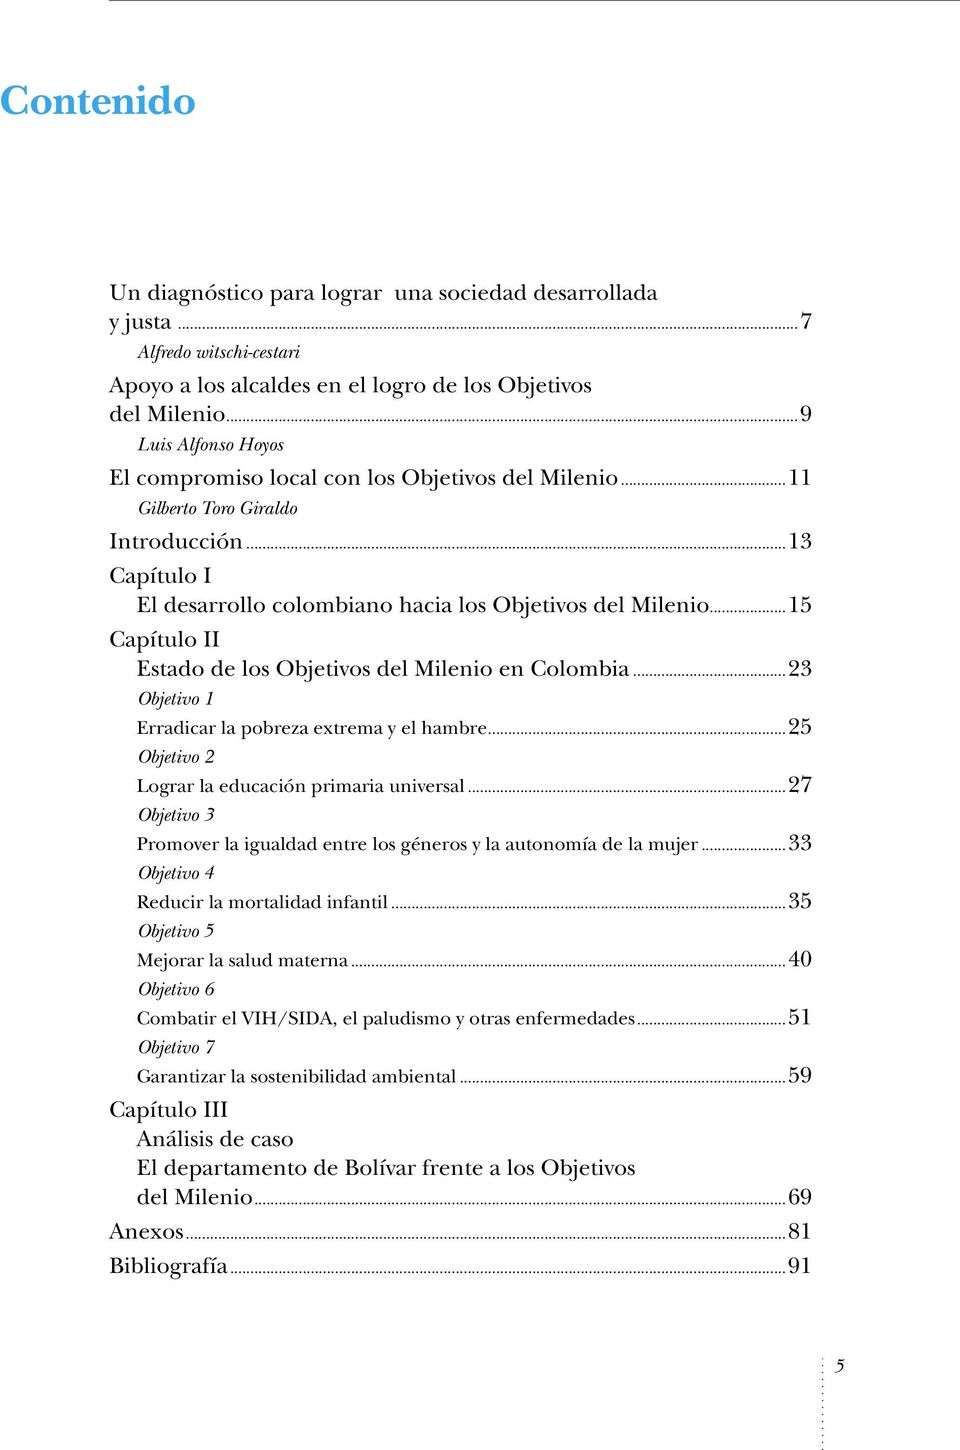 ..15 Capítulo II Estado de los Objetivos del Milenio en Colombia...23 Objetivo 1 Erradicar la pobreza extrema y el hambre...25 Objetivo 2 Lograr la educación primaria universal.